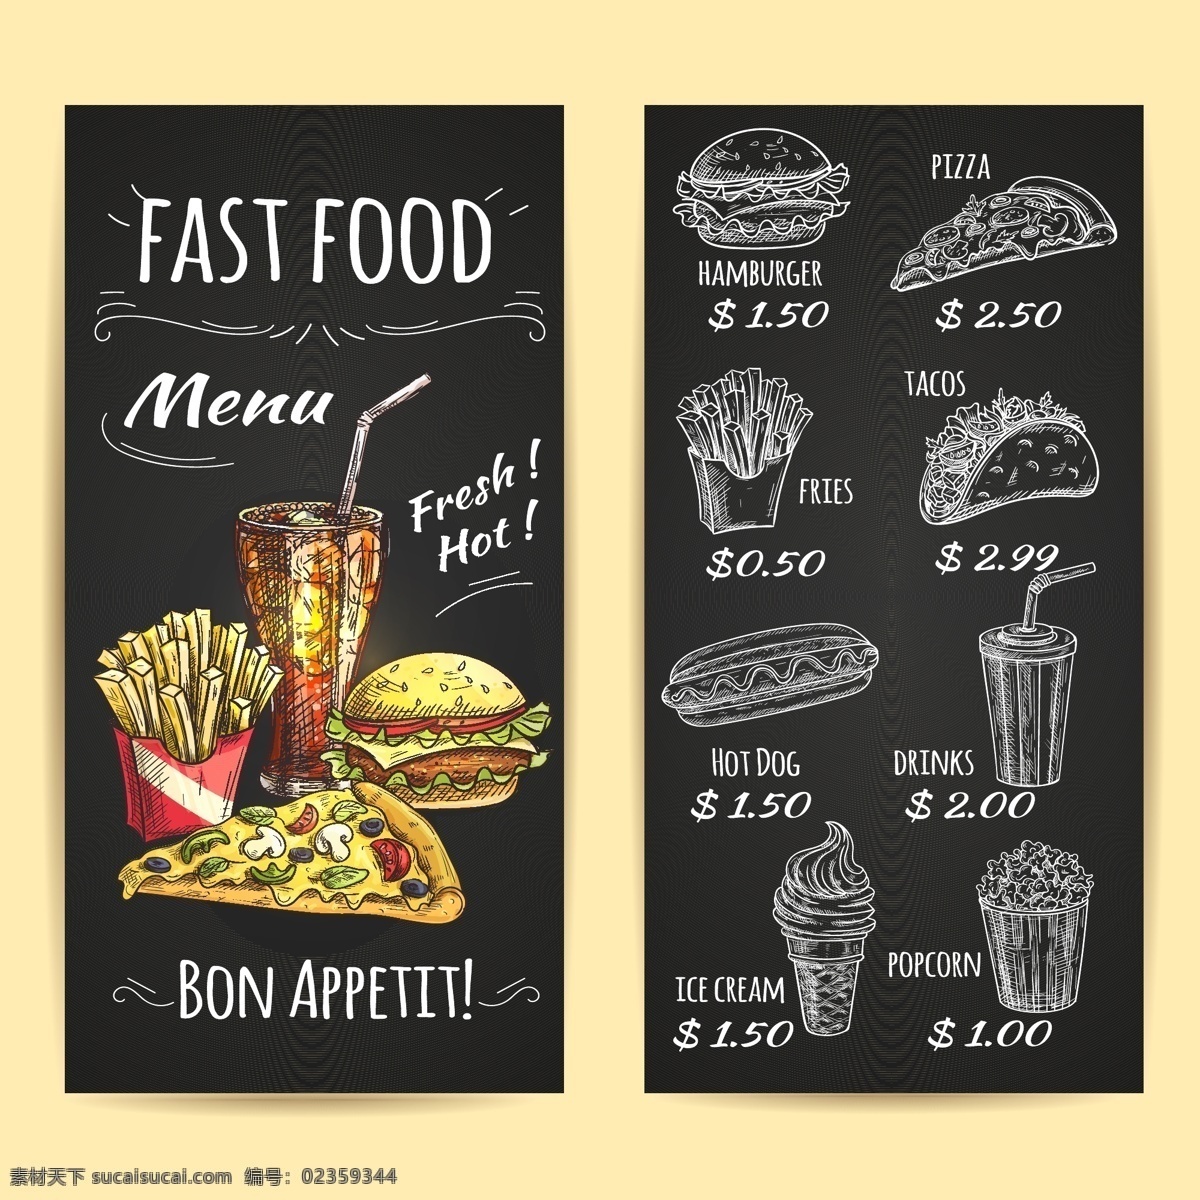 食物 菜单 价格表 食物菜单 菜单设计 插画 手绘 价格展示 banners 底纹边框 矢量素材